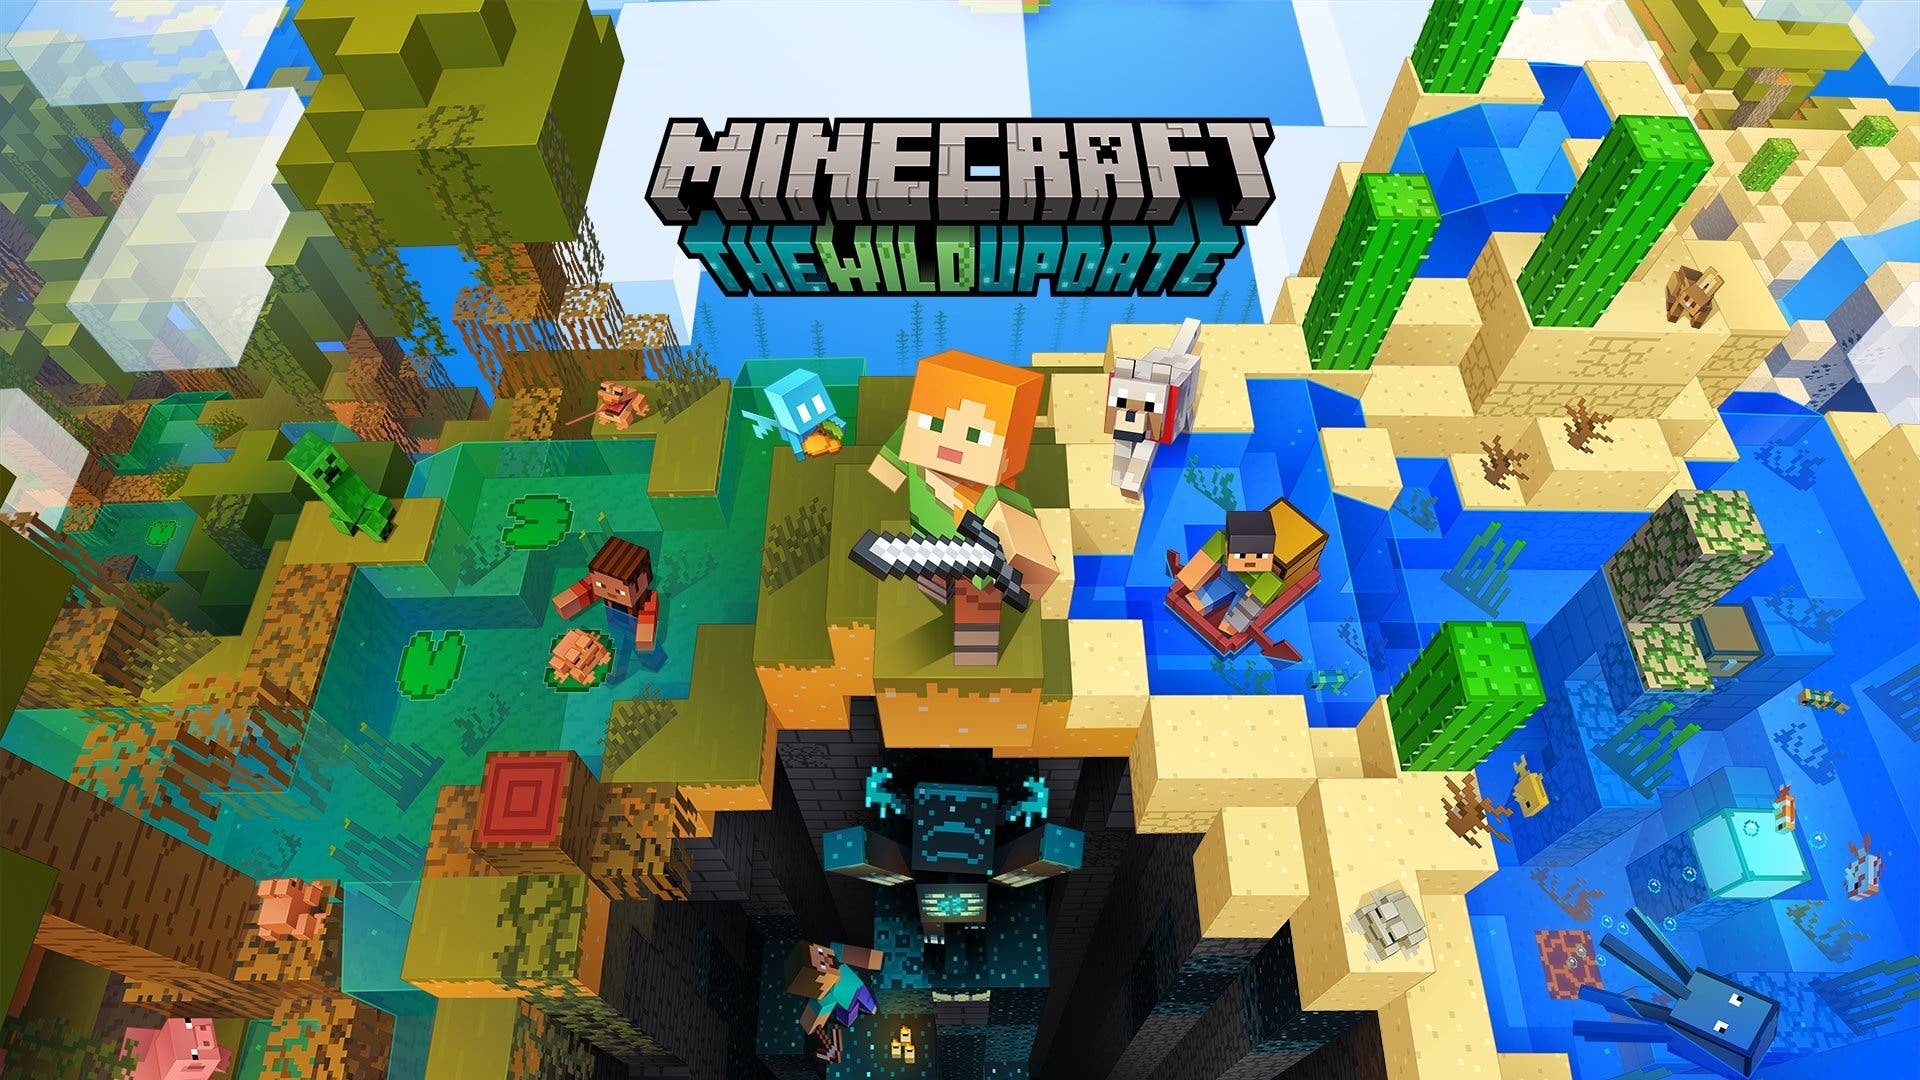 Hình nền  Minecraft Trò chơi nghệ thuật Tác phẩm nghệ thuật 3D Abstract  2560x1411  muskyrusk  1692677  Hình nền đẹp hd  WallHere